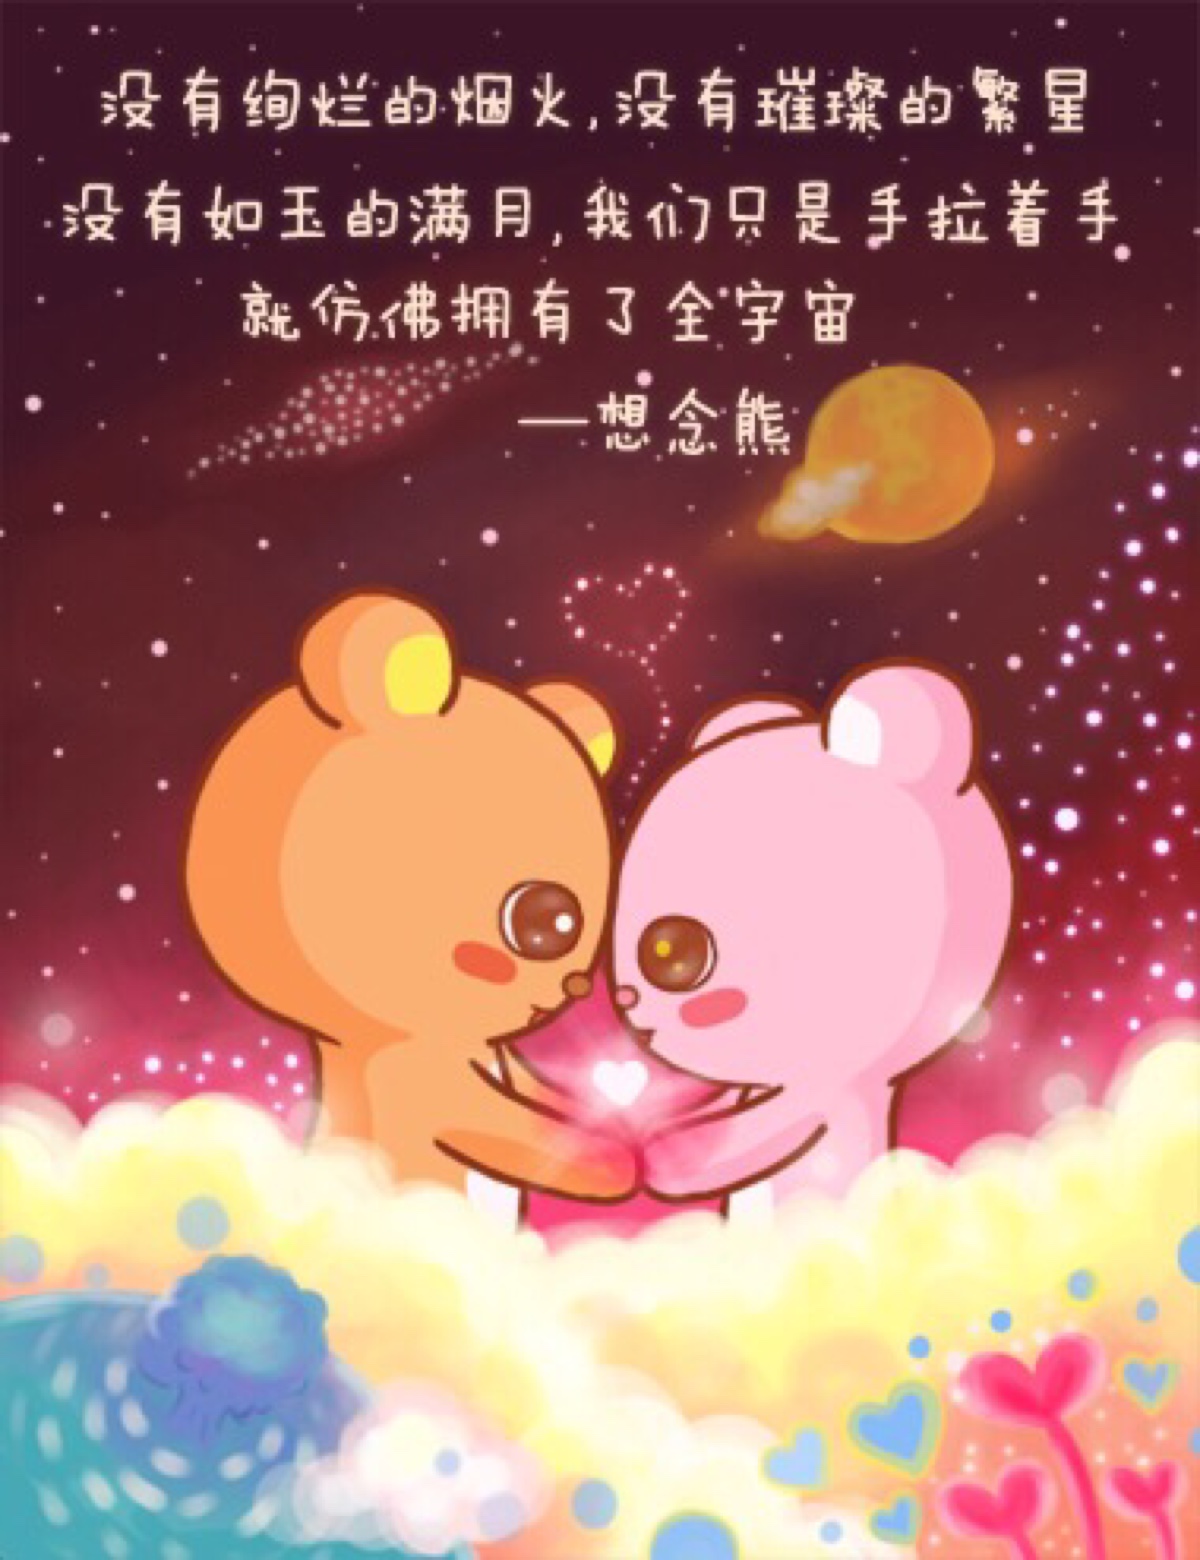 想念熊 头像 壁纸 萌 可爱 插图 微信 爱情语录 表情 情侣